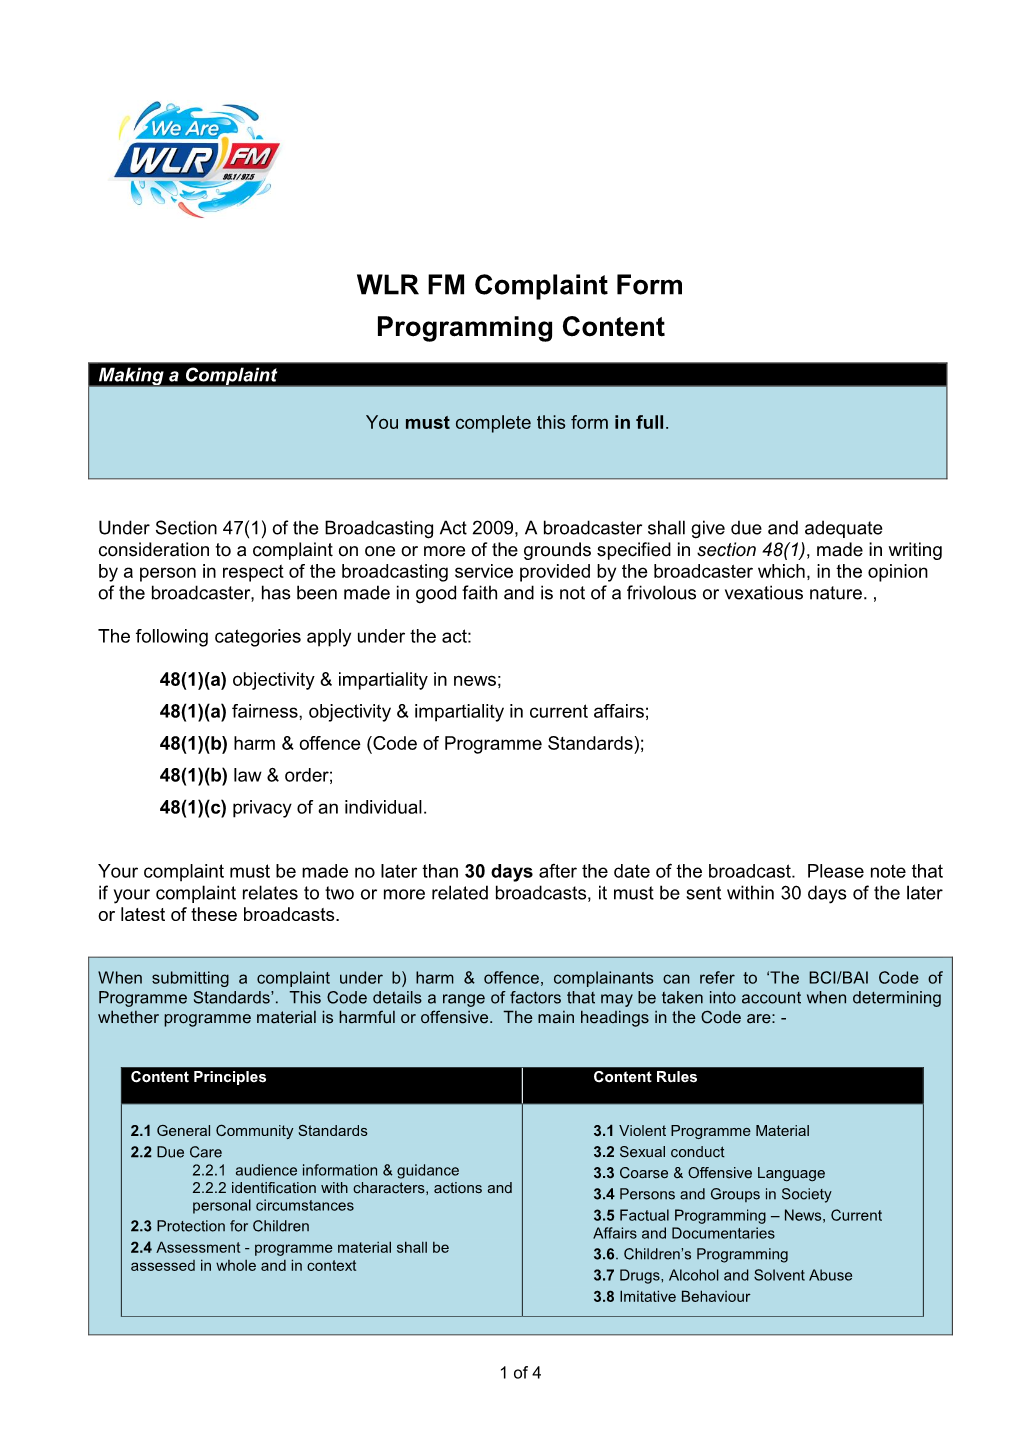 WLR FM Complaint Form Programming Content